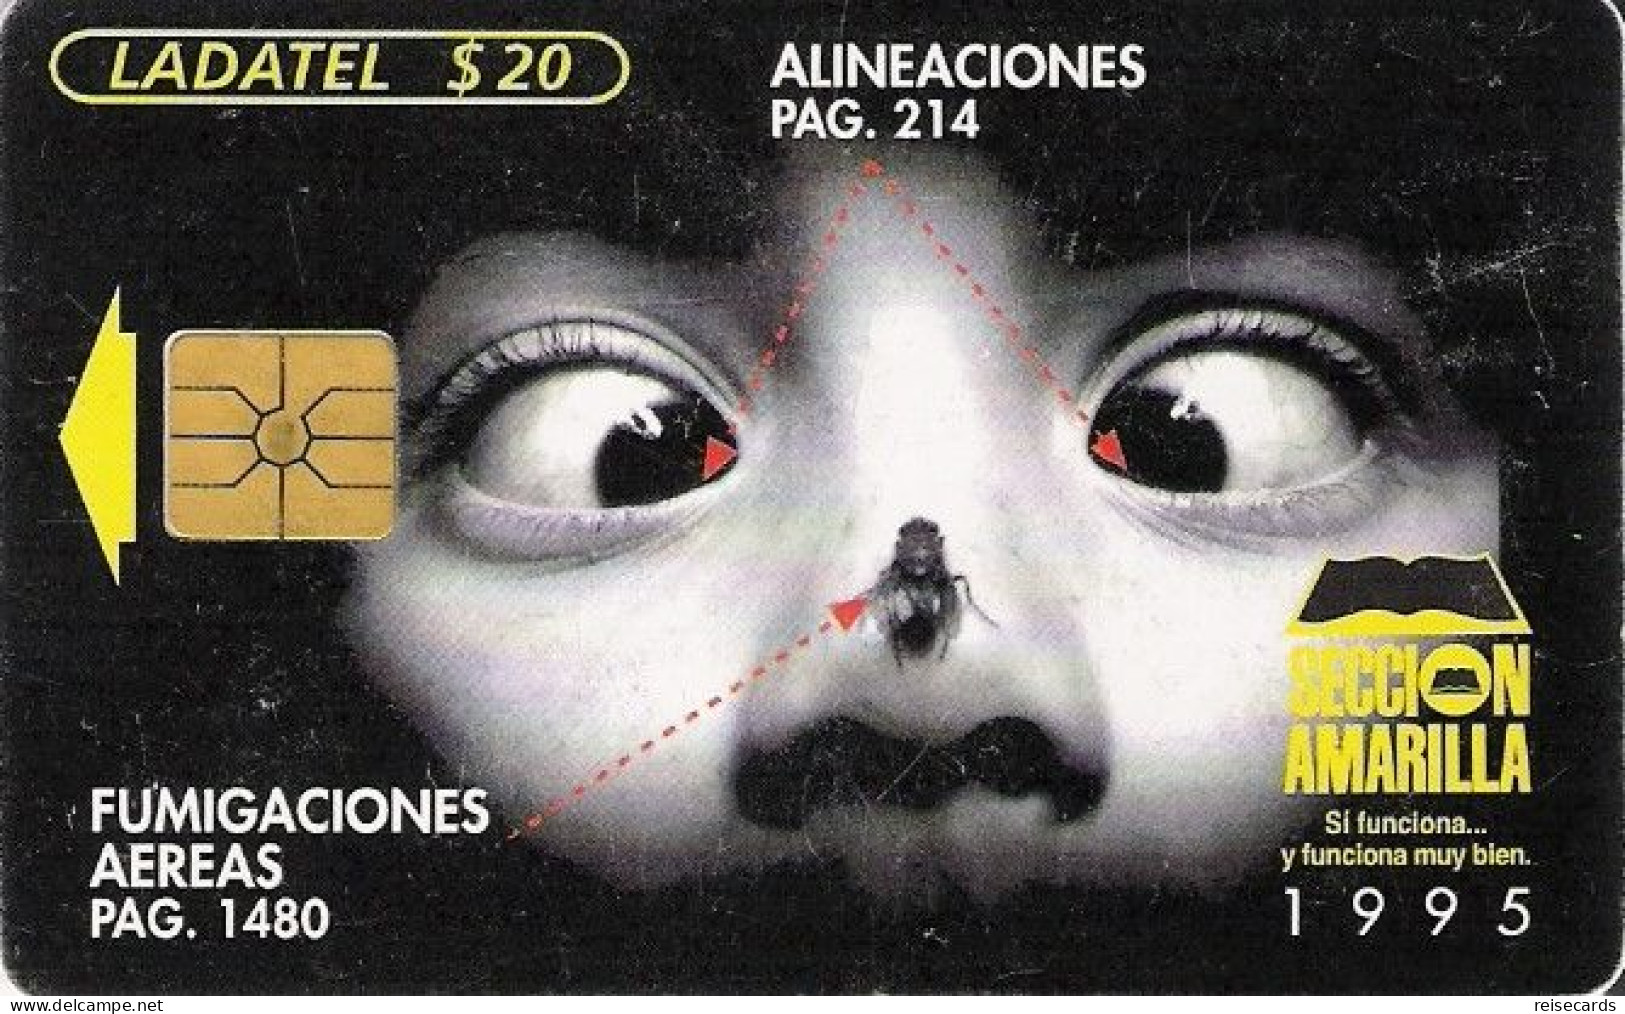 Mexico: Telmex/lLadatel - 1997 Seccion Amarilla - Mexico